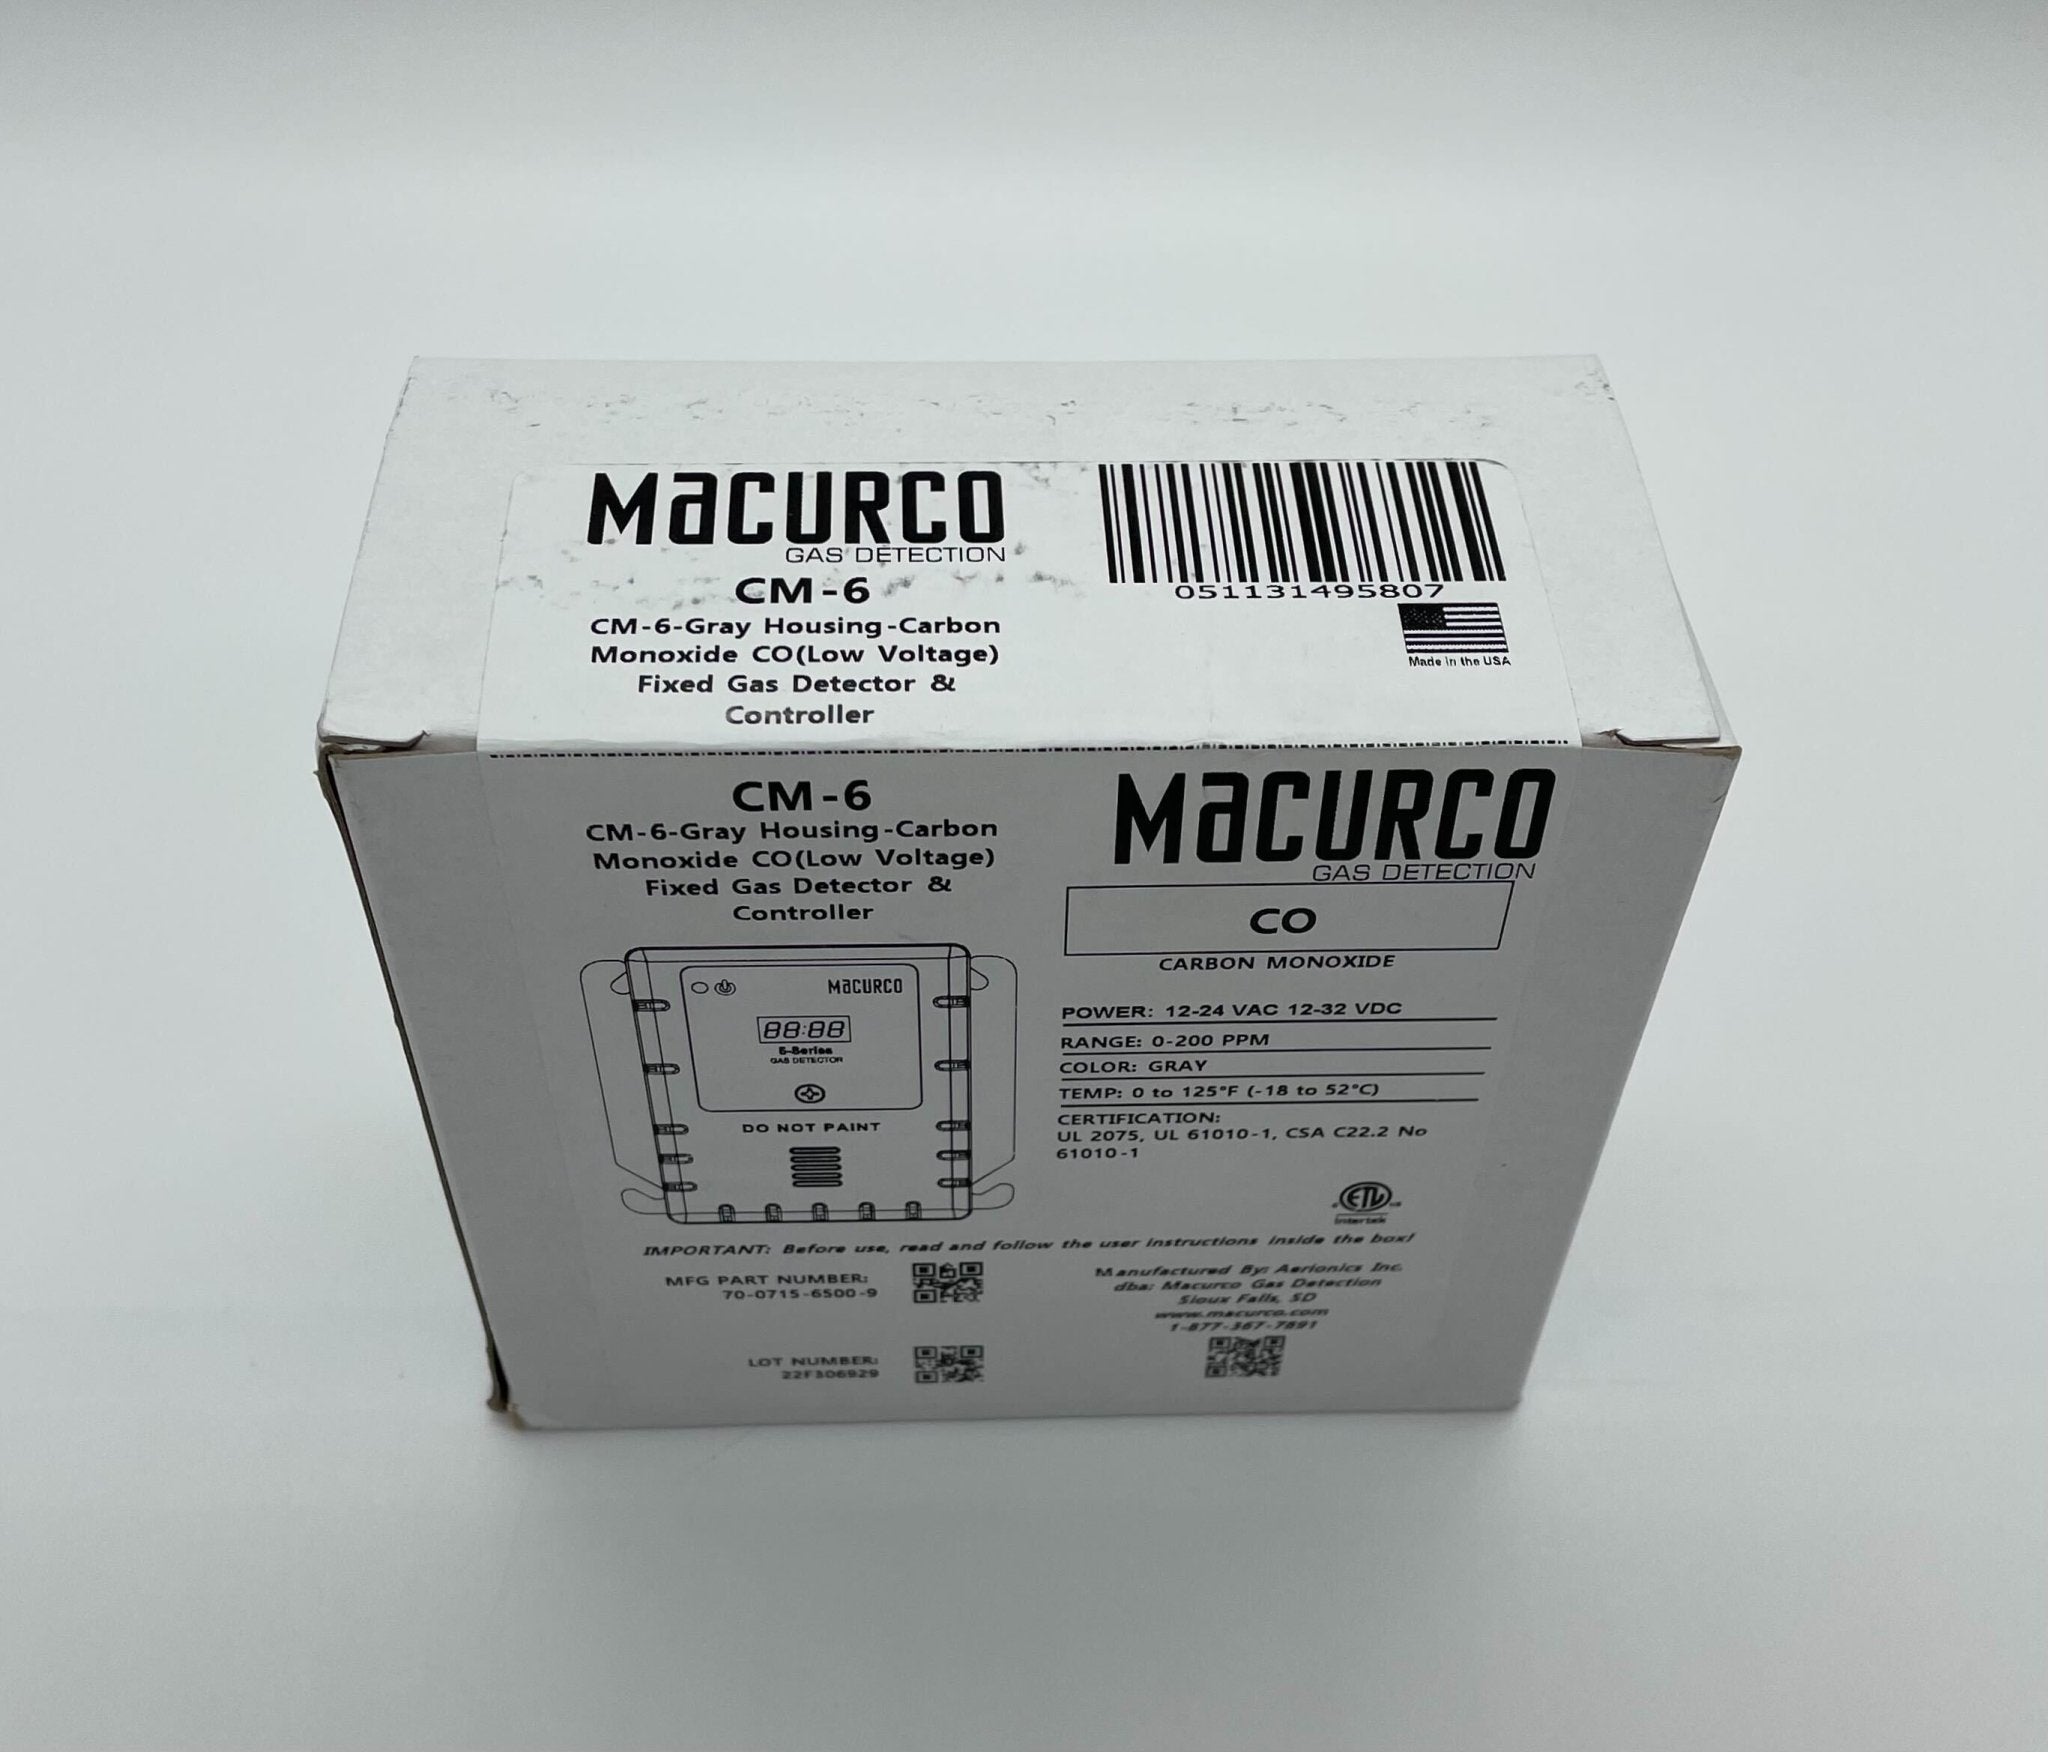 Macurco CM-6 Carbon Monoxide Gas Detector - The Fire Alarm Supplier